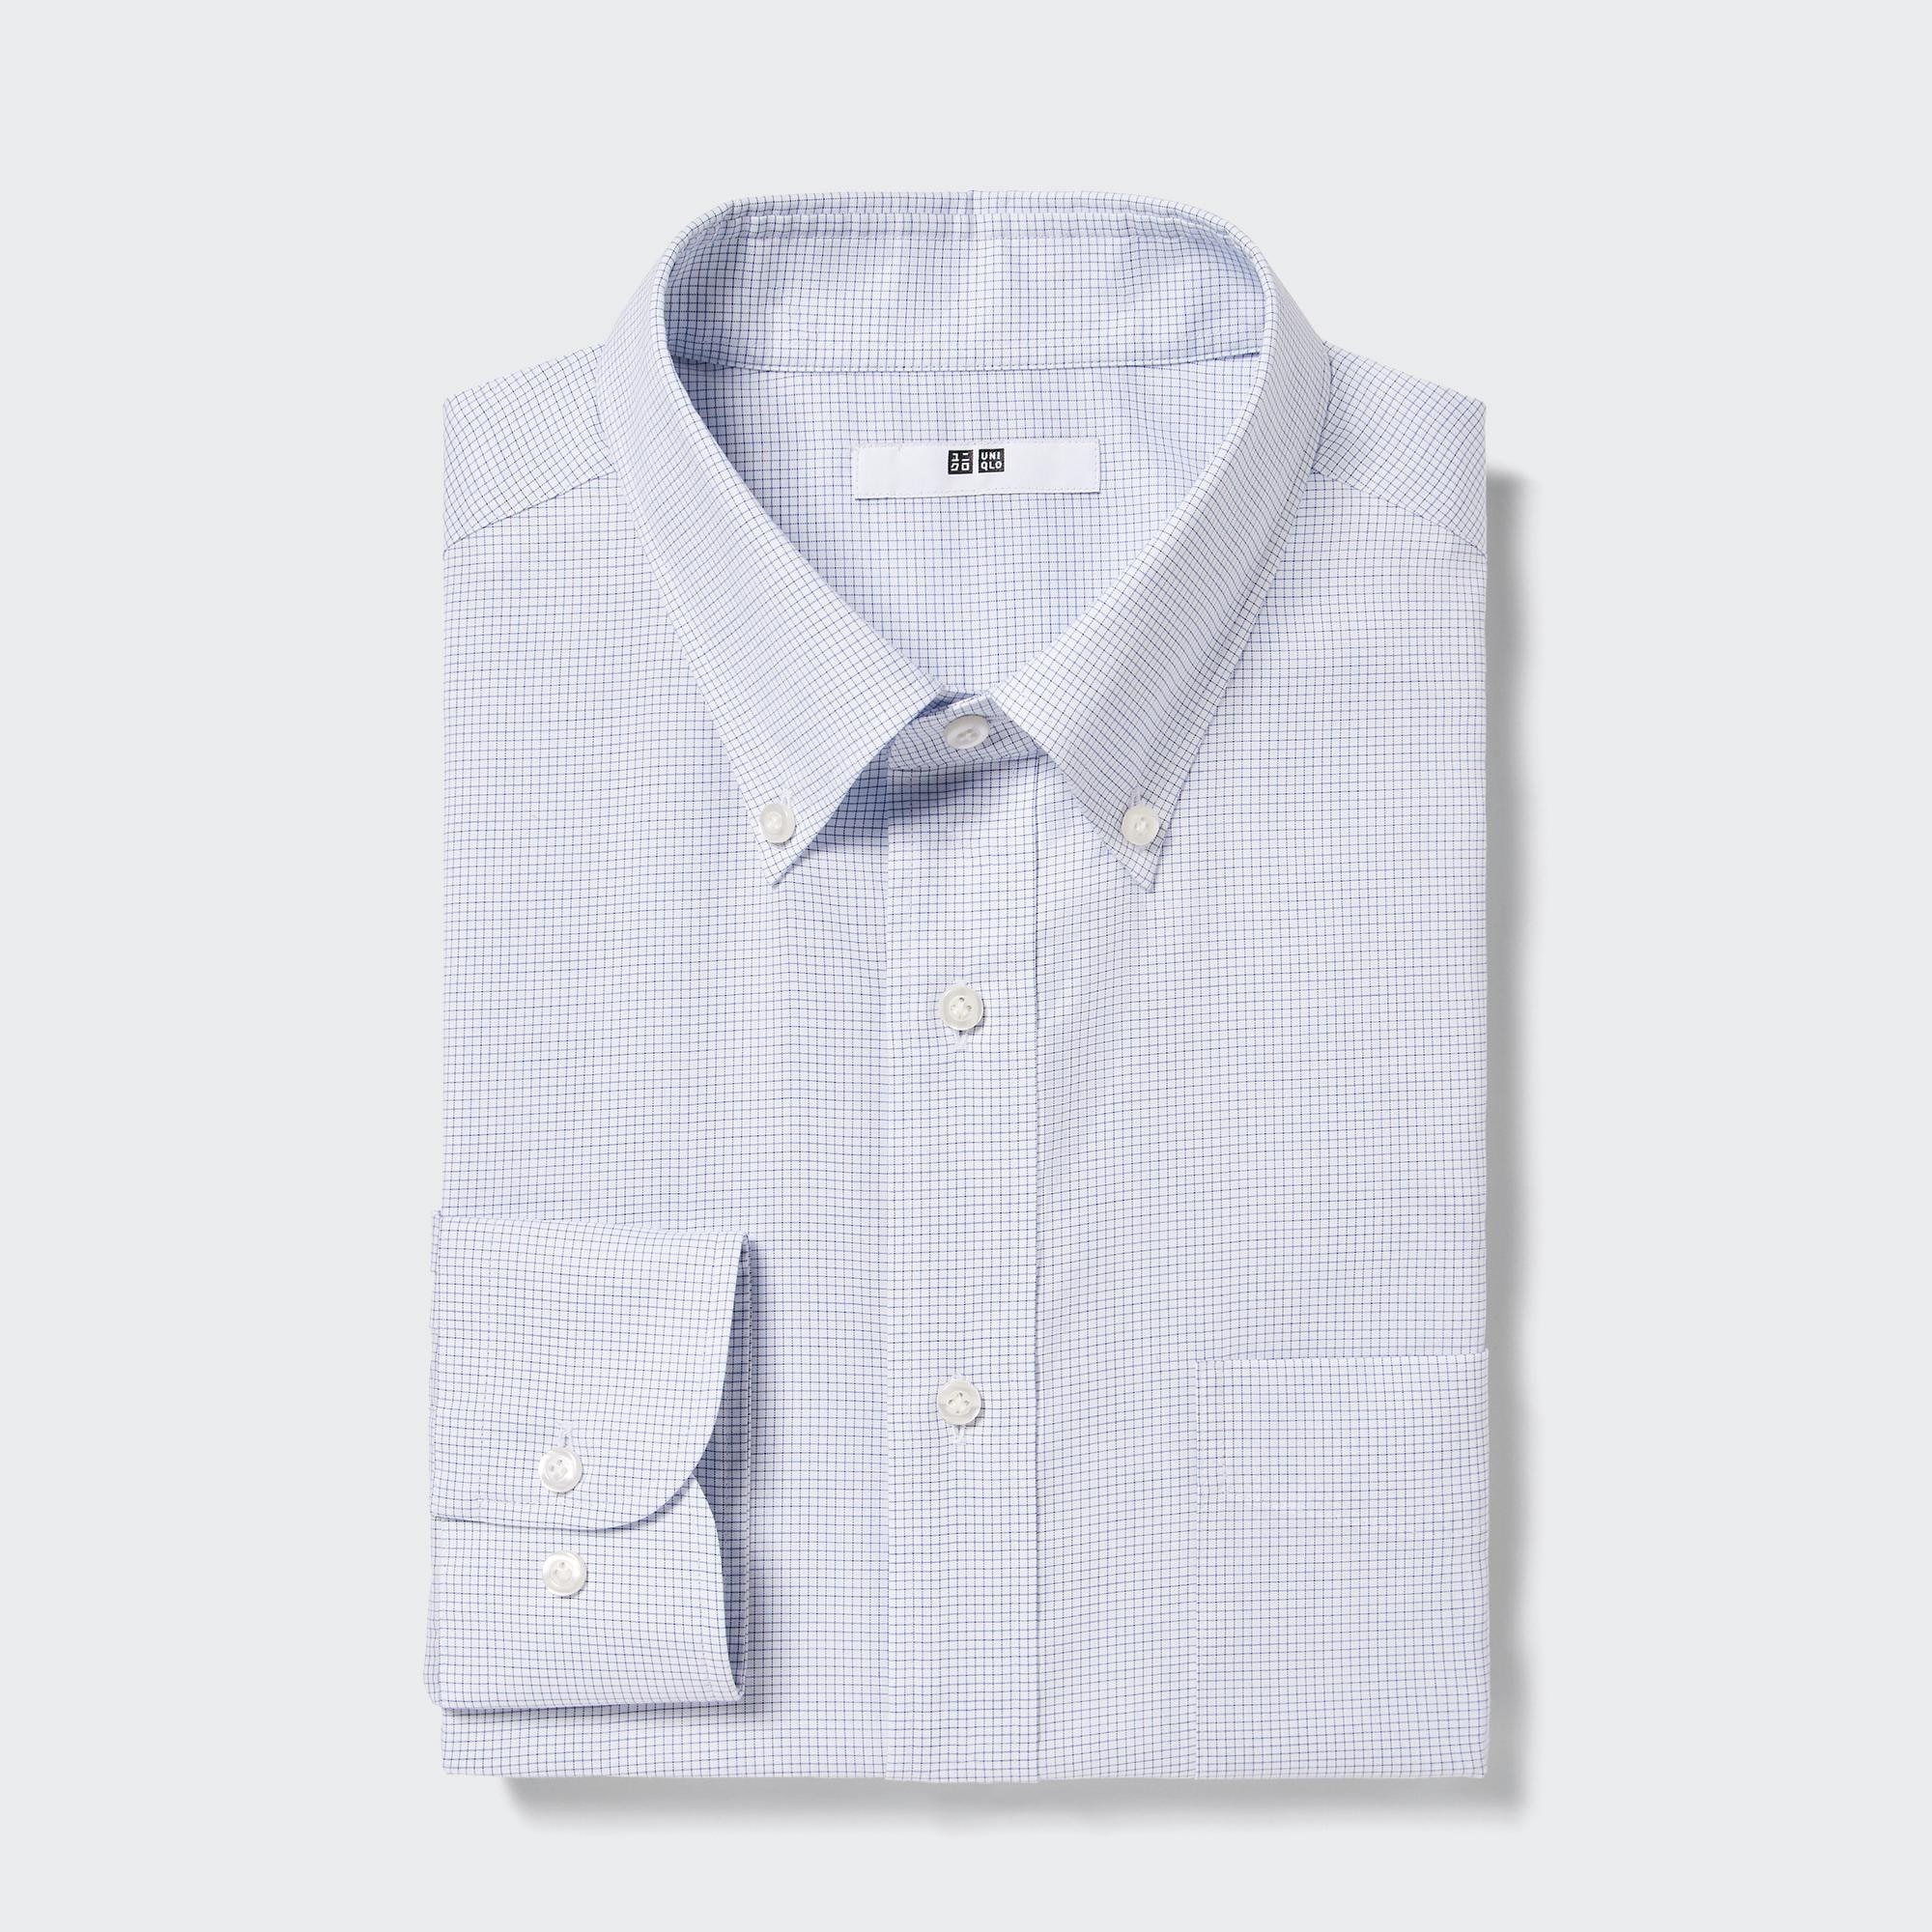 ワイシャツ サイズの関連商品 | ユニクロ